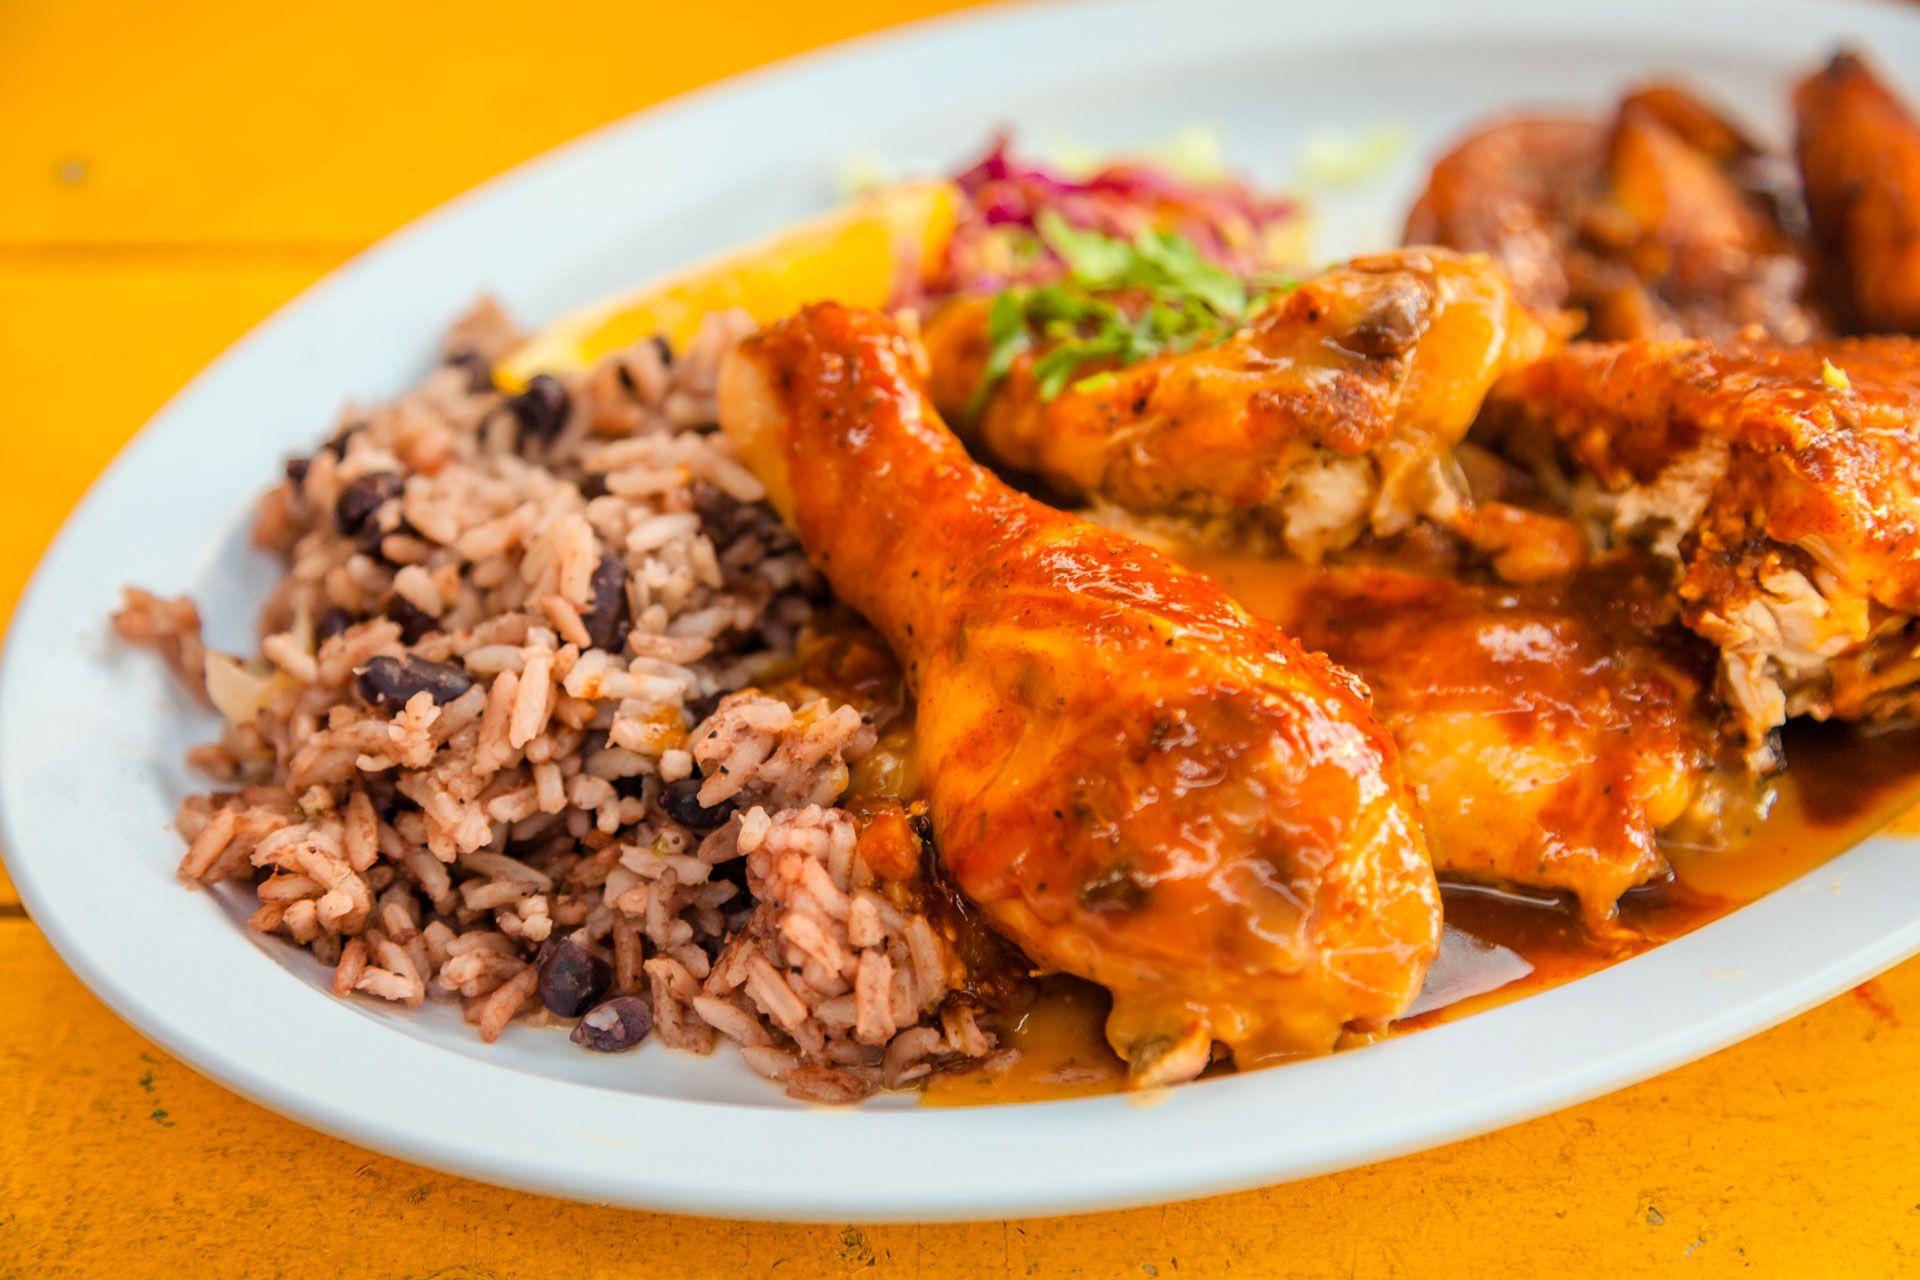 Jamaican jerk chicken with rice